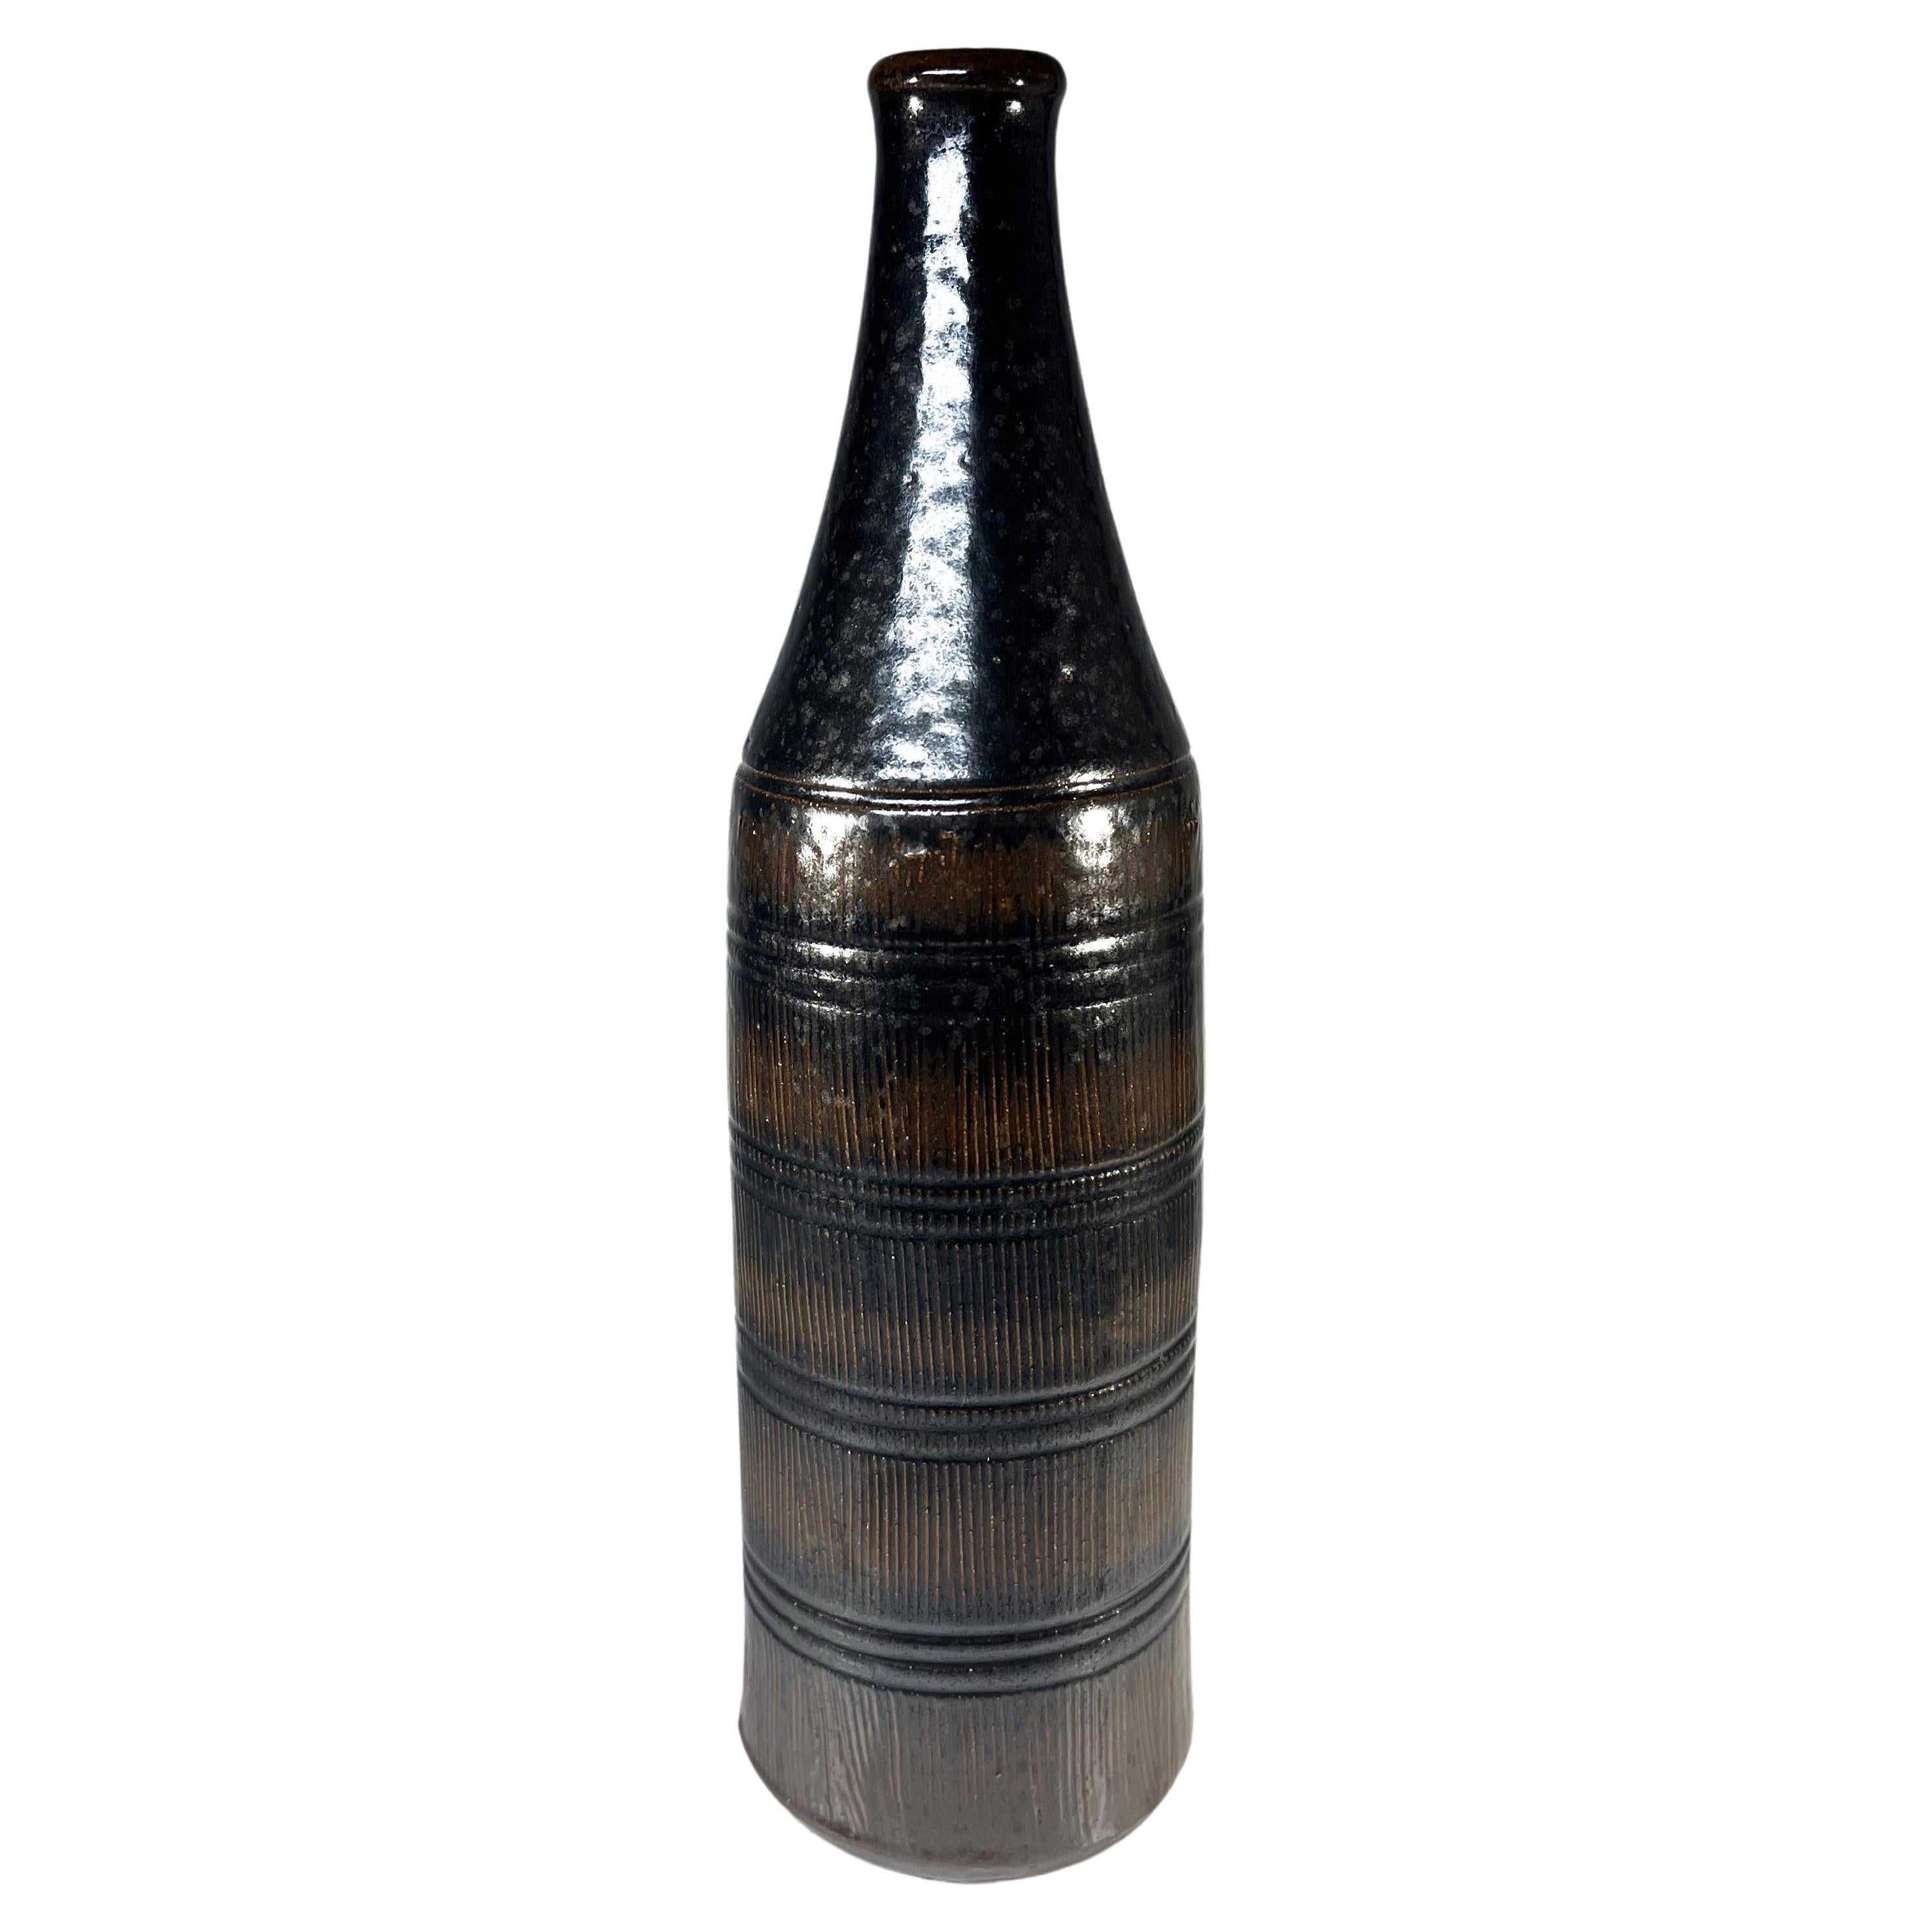 Arthur Andersson For Wallåkra, Sweden, Dark Intense Glazed Stoneware Bottle Vase